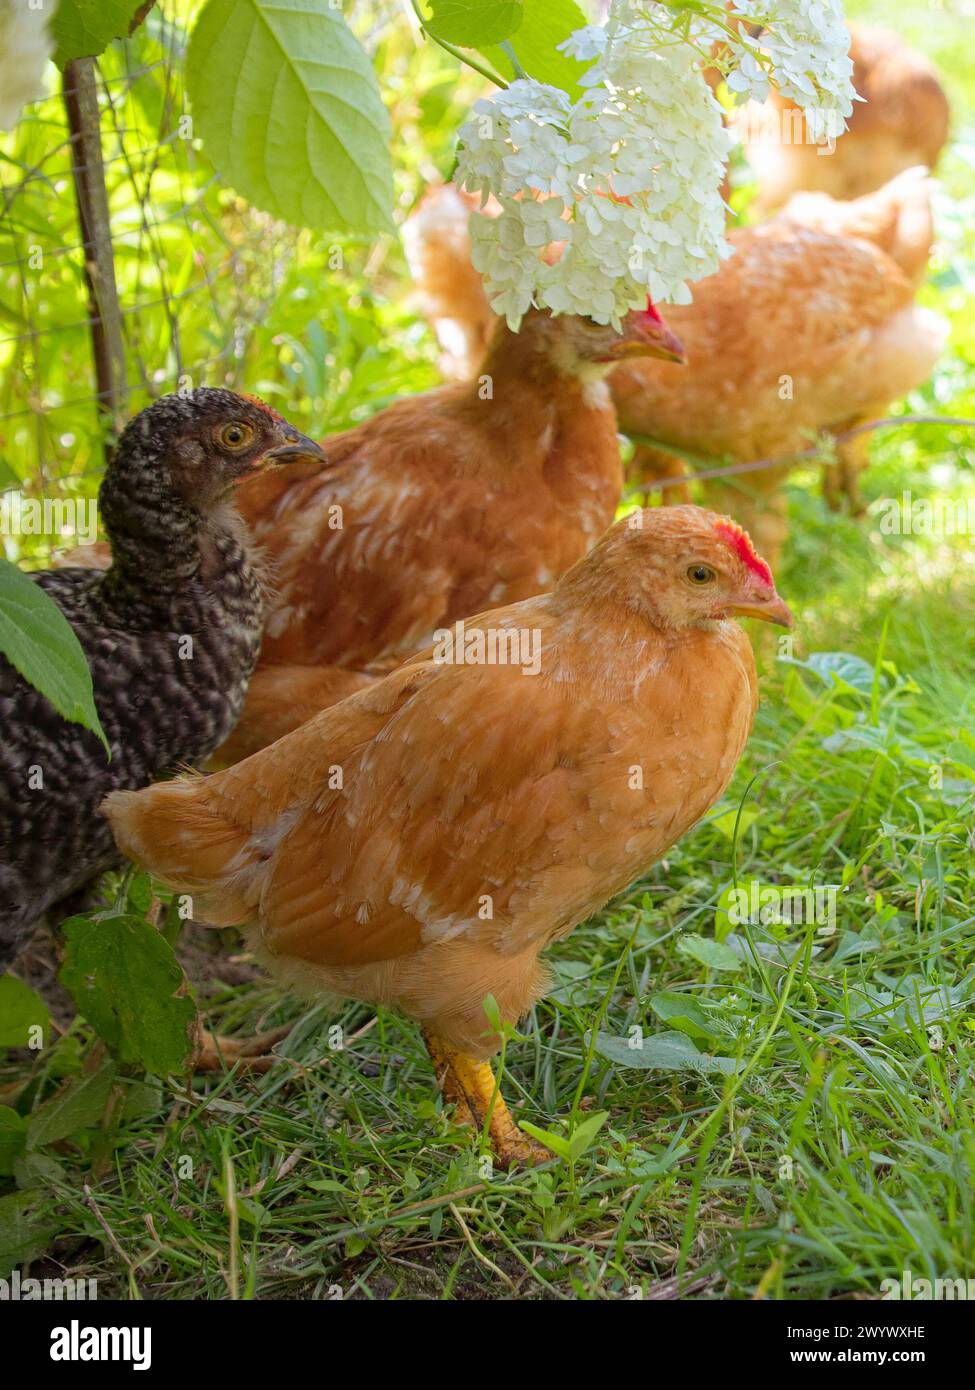 Immagini vivaci che catturano polli in mezzo alla natura; sono circondati dal verde, tra cui erba e piante. Foto Stock